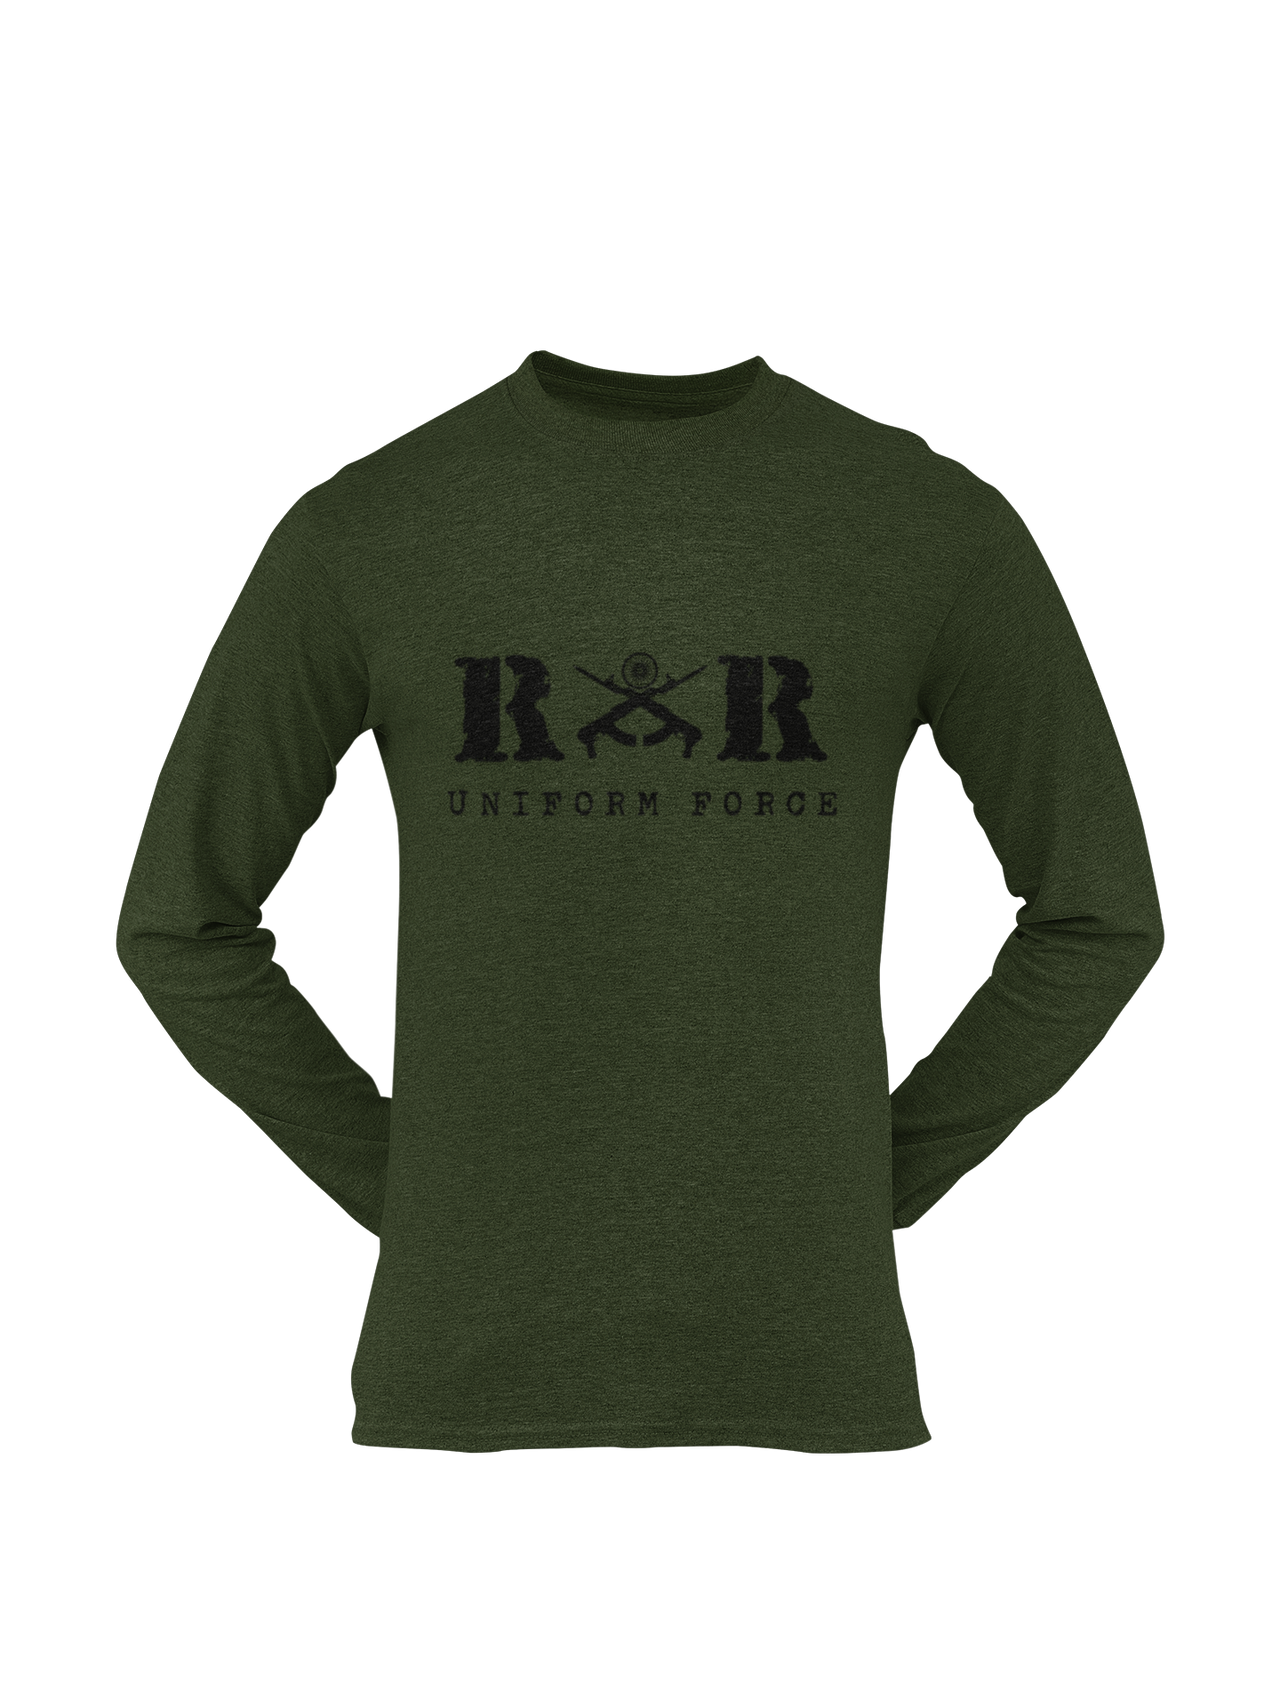 Rashtriya Rifles T-shirt - RR Uniform Force ( Men)